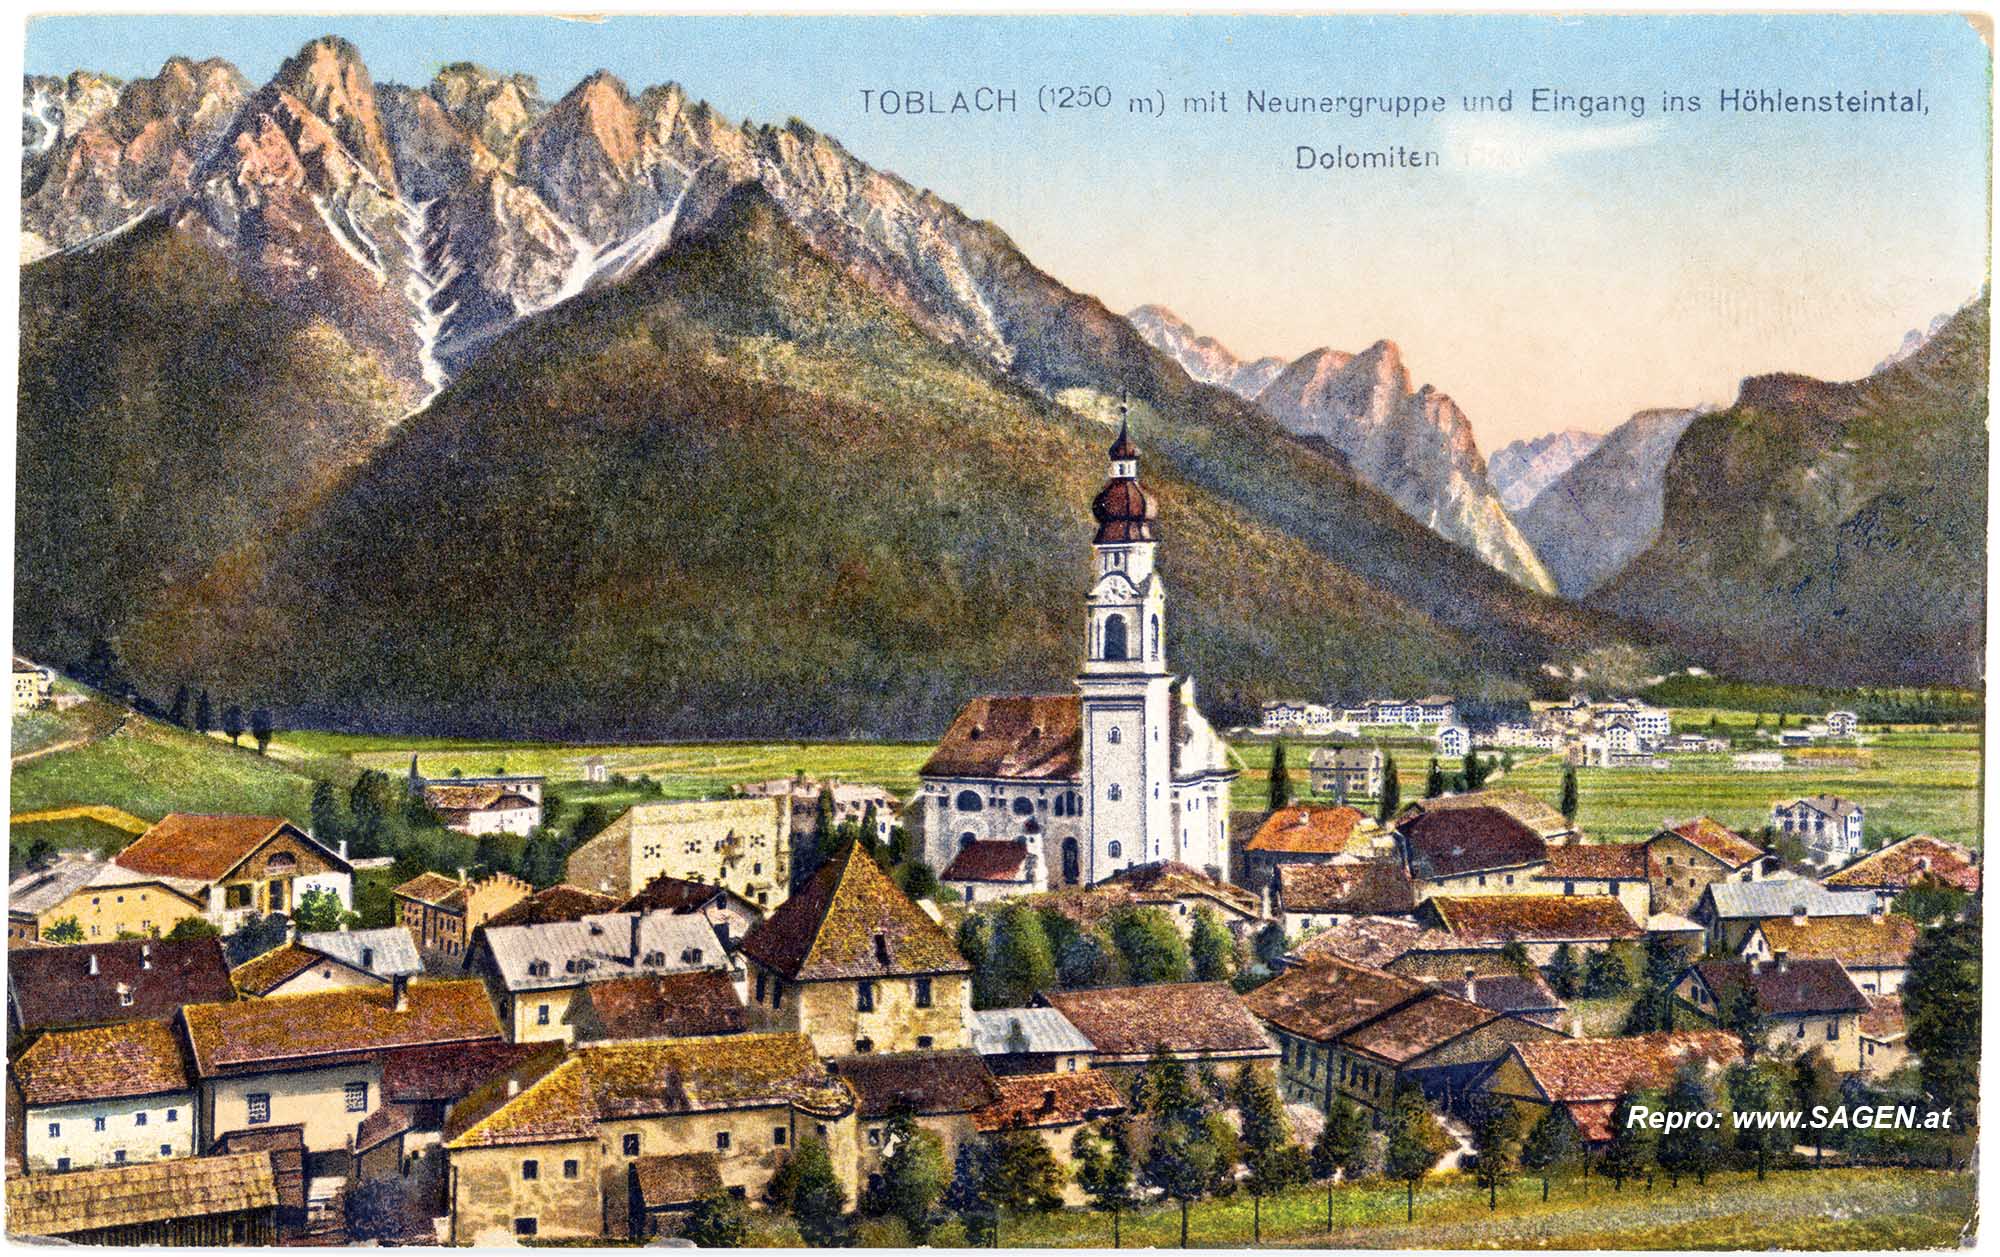 Toblach mit Neunergruppe und Eingang ins Höhlensteintal Dolomiten